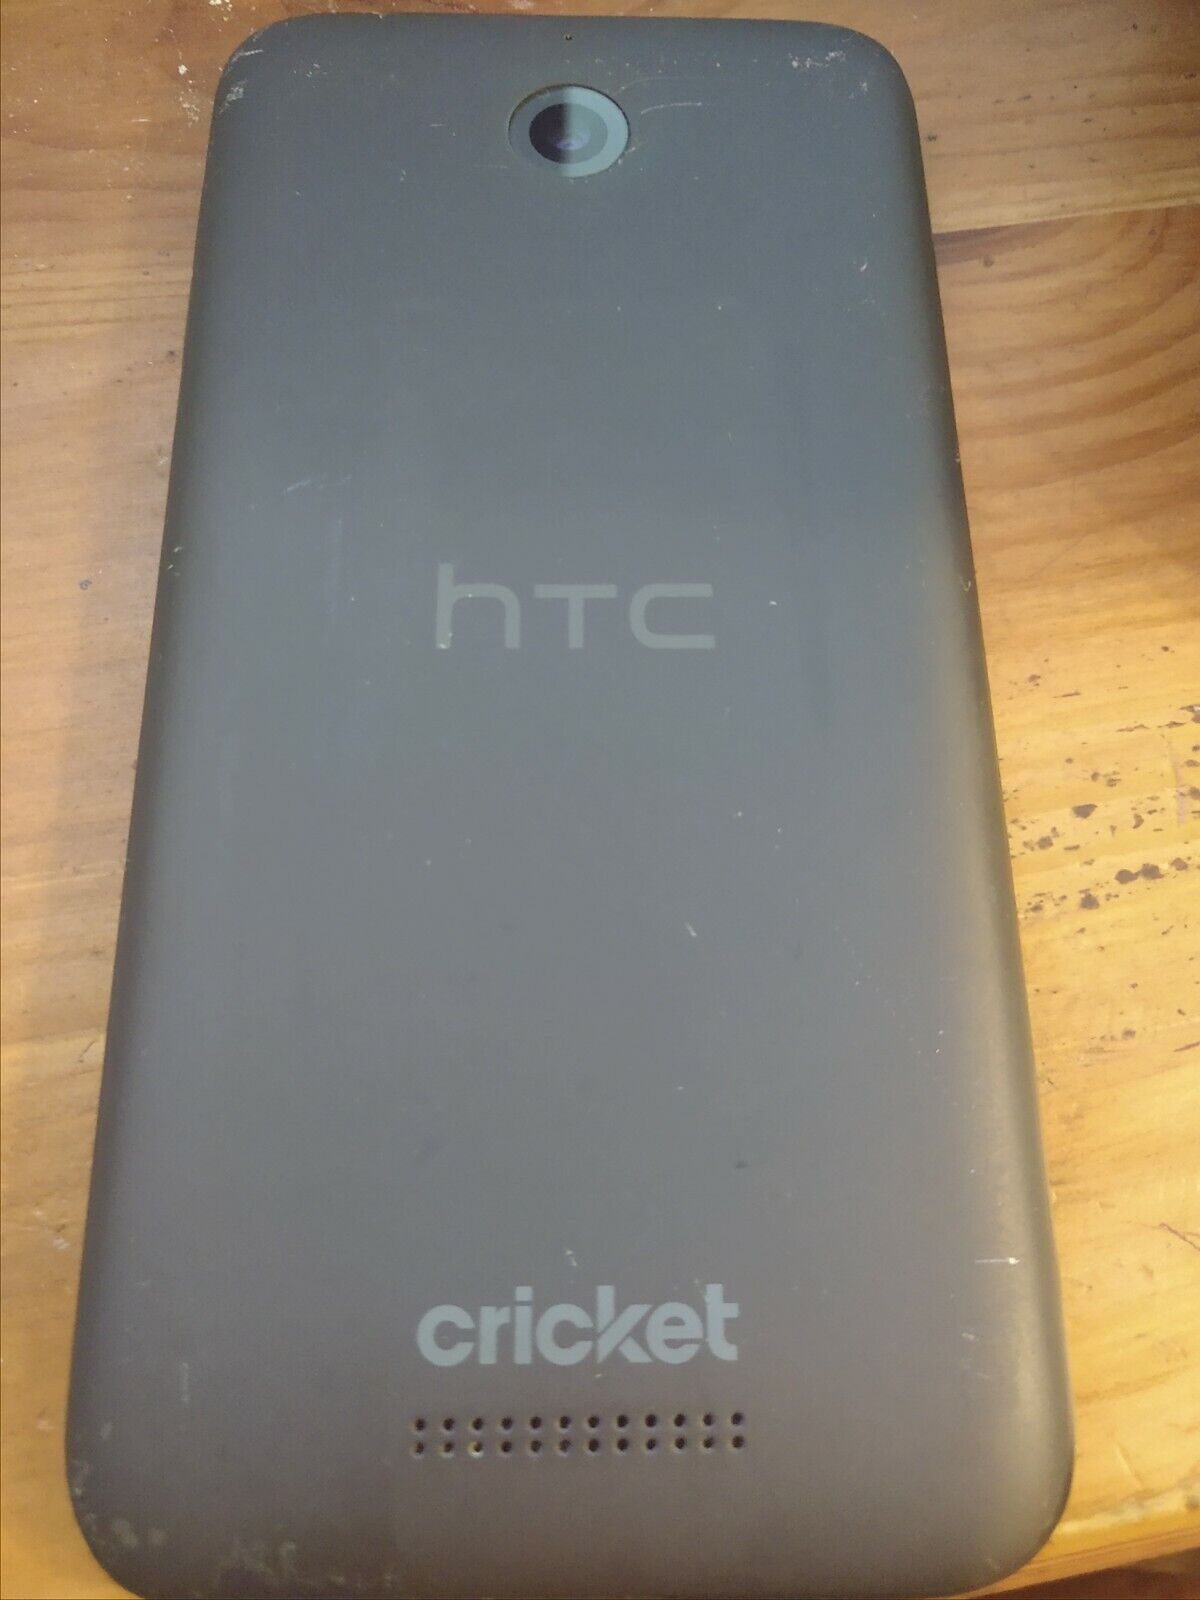 HTC DESIRE 510 OPCV220 BLACK CRICKET SMARTPHONE AS IS PARTS OR REPAIR HTC HTC Desire 510 - фотография #3